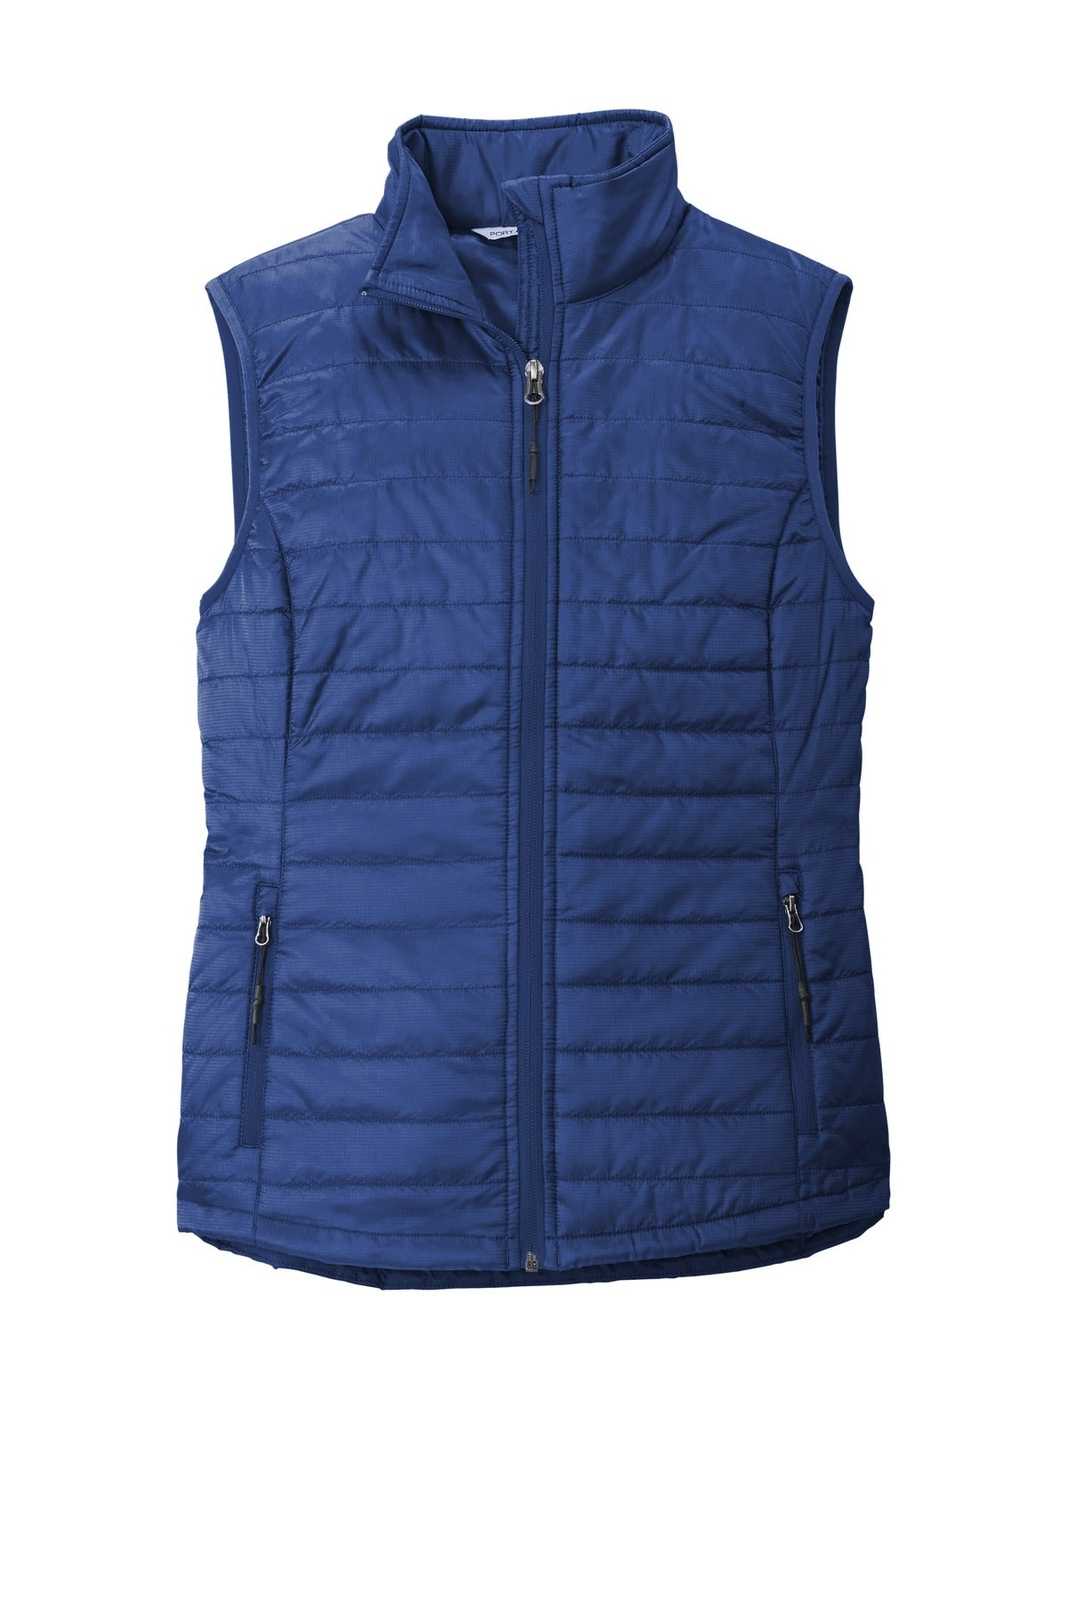 Port Authority L851 Ladies Packable Puffy Vest - Cobalt Blue - HIT a Double - 5